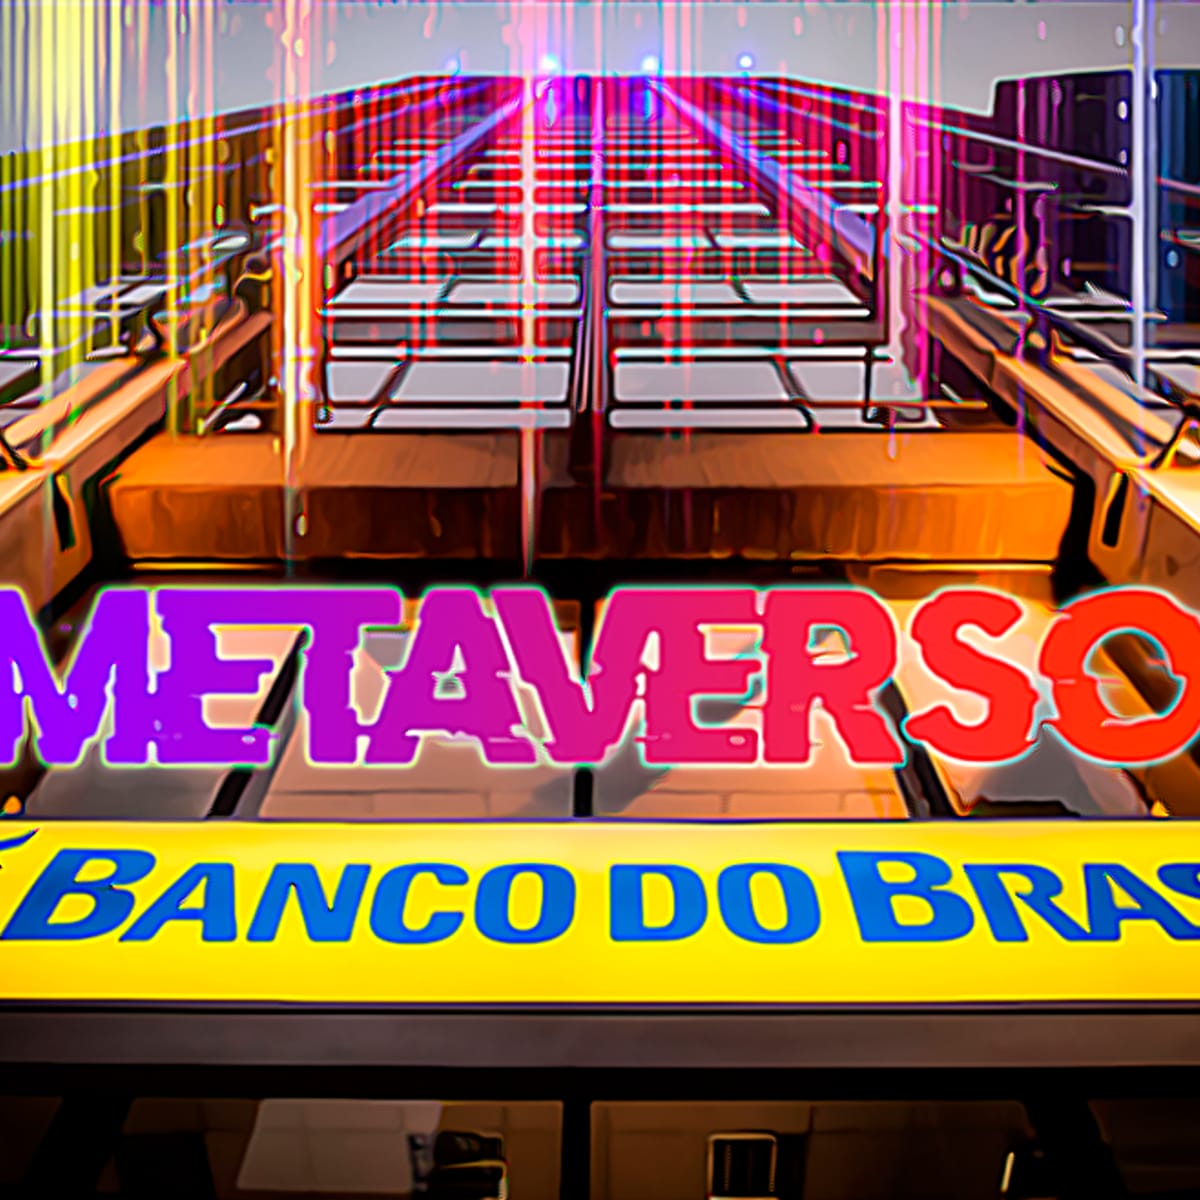 Banco do Brasil desembarca na plataforma de jogos Roblox